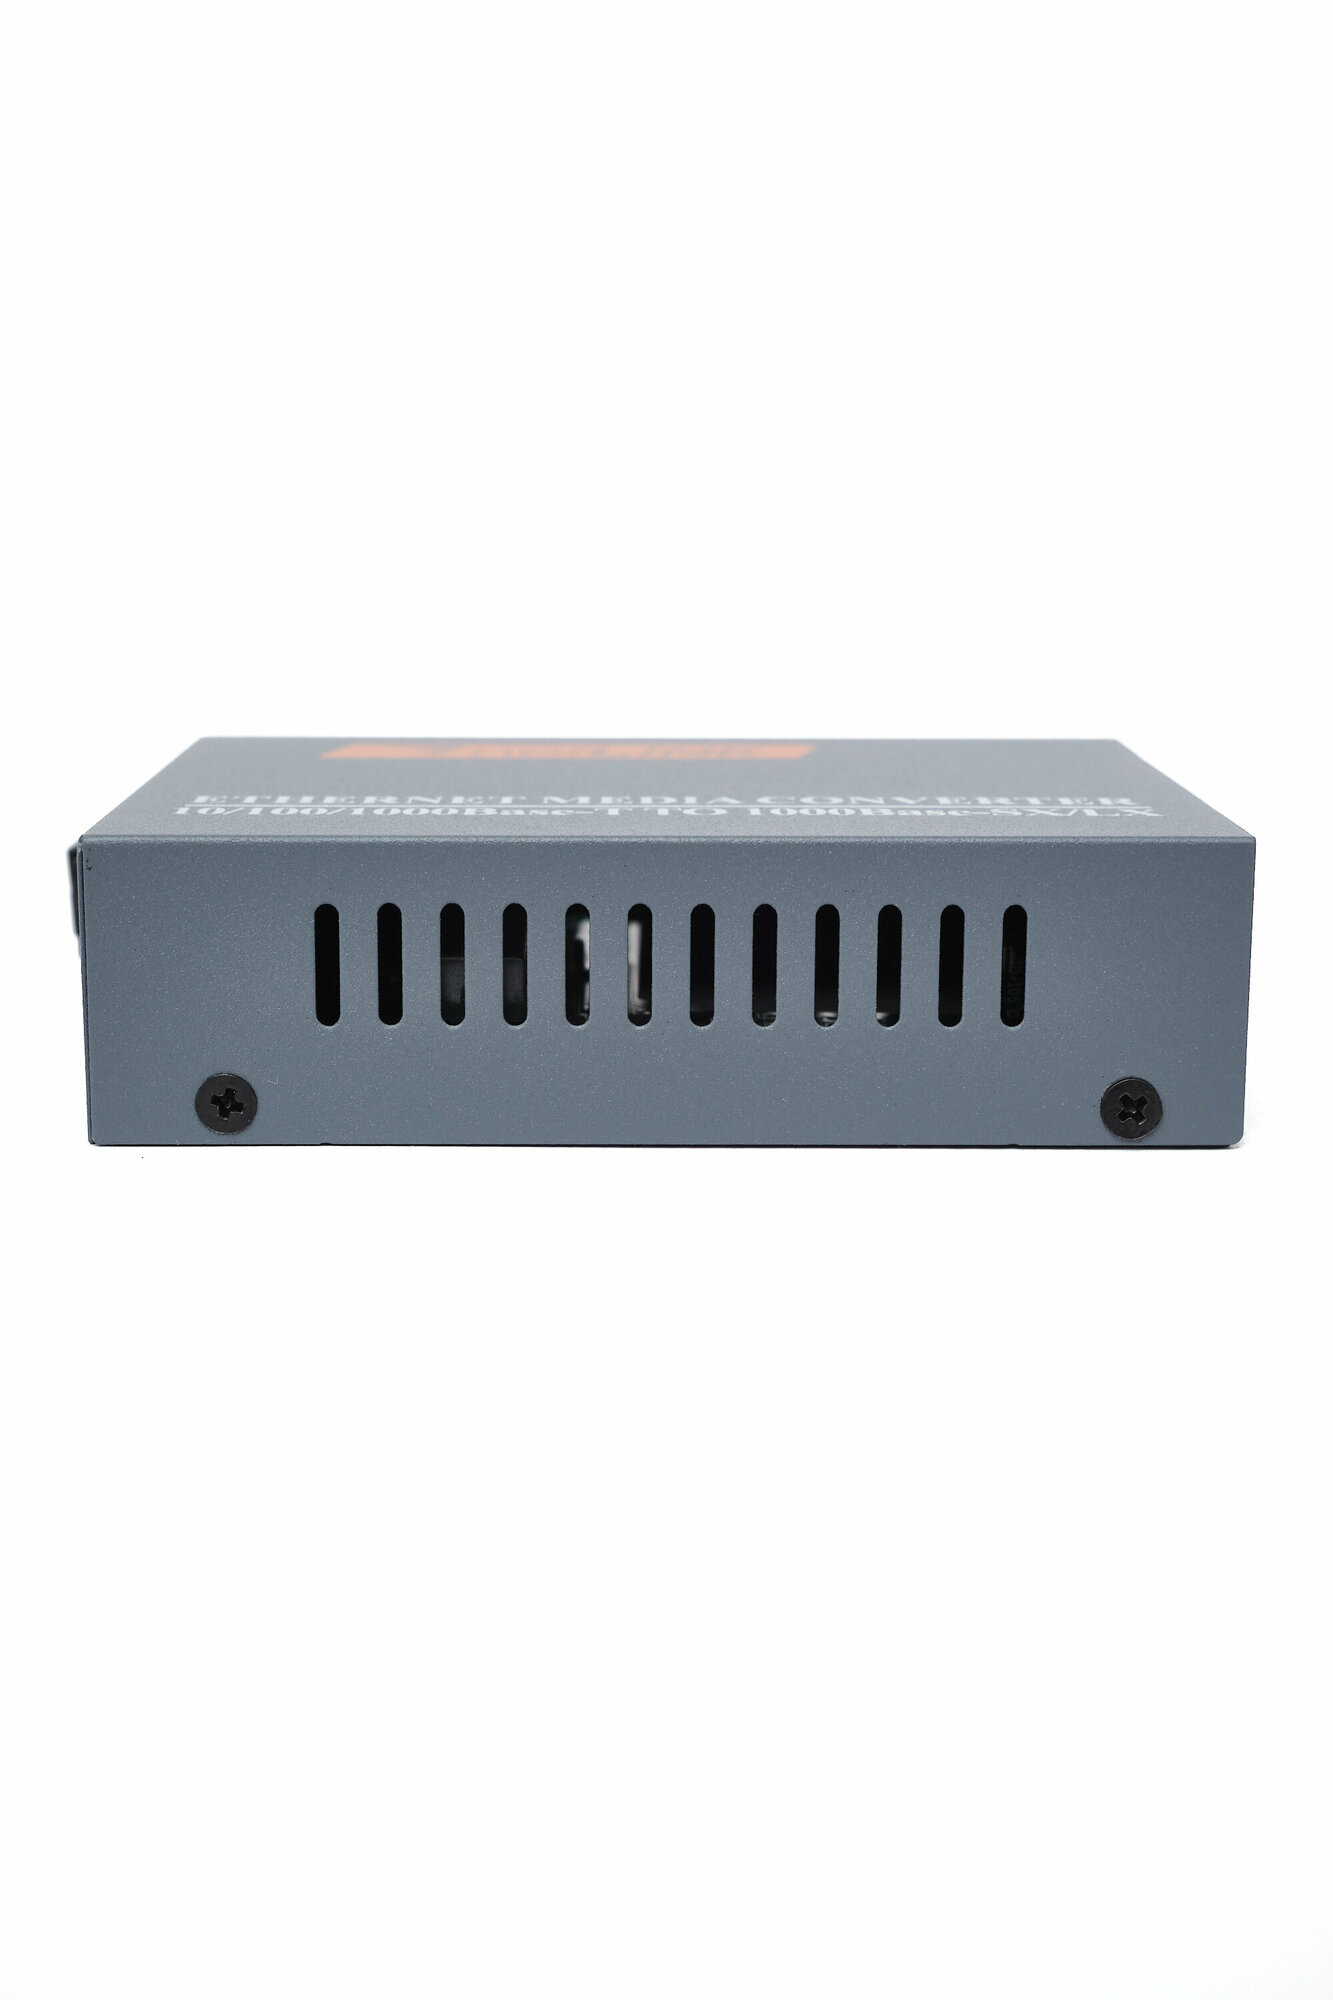 Медиаконвертер пара HTB-GS-03 A/B Гигабит 100/1000Mbps Преобразователь сигнала/ комплект